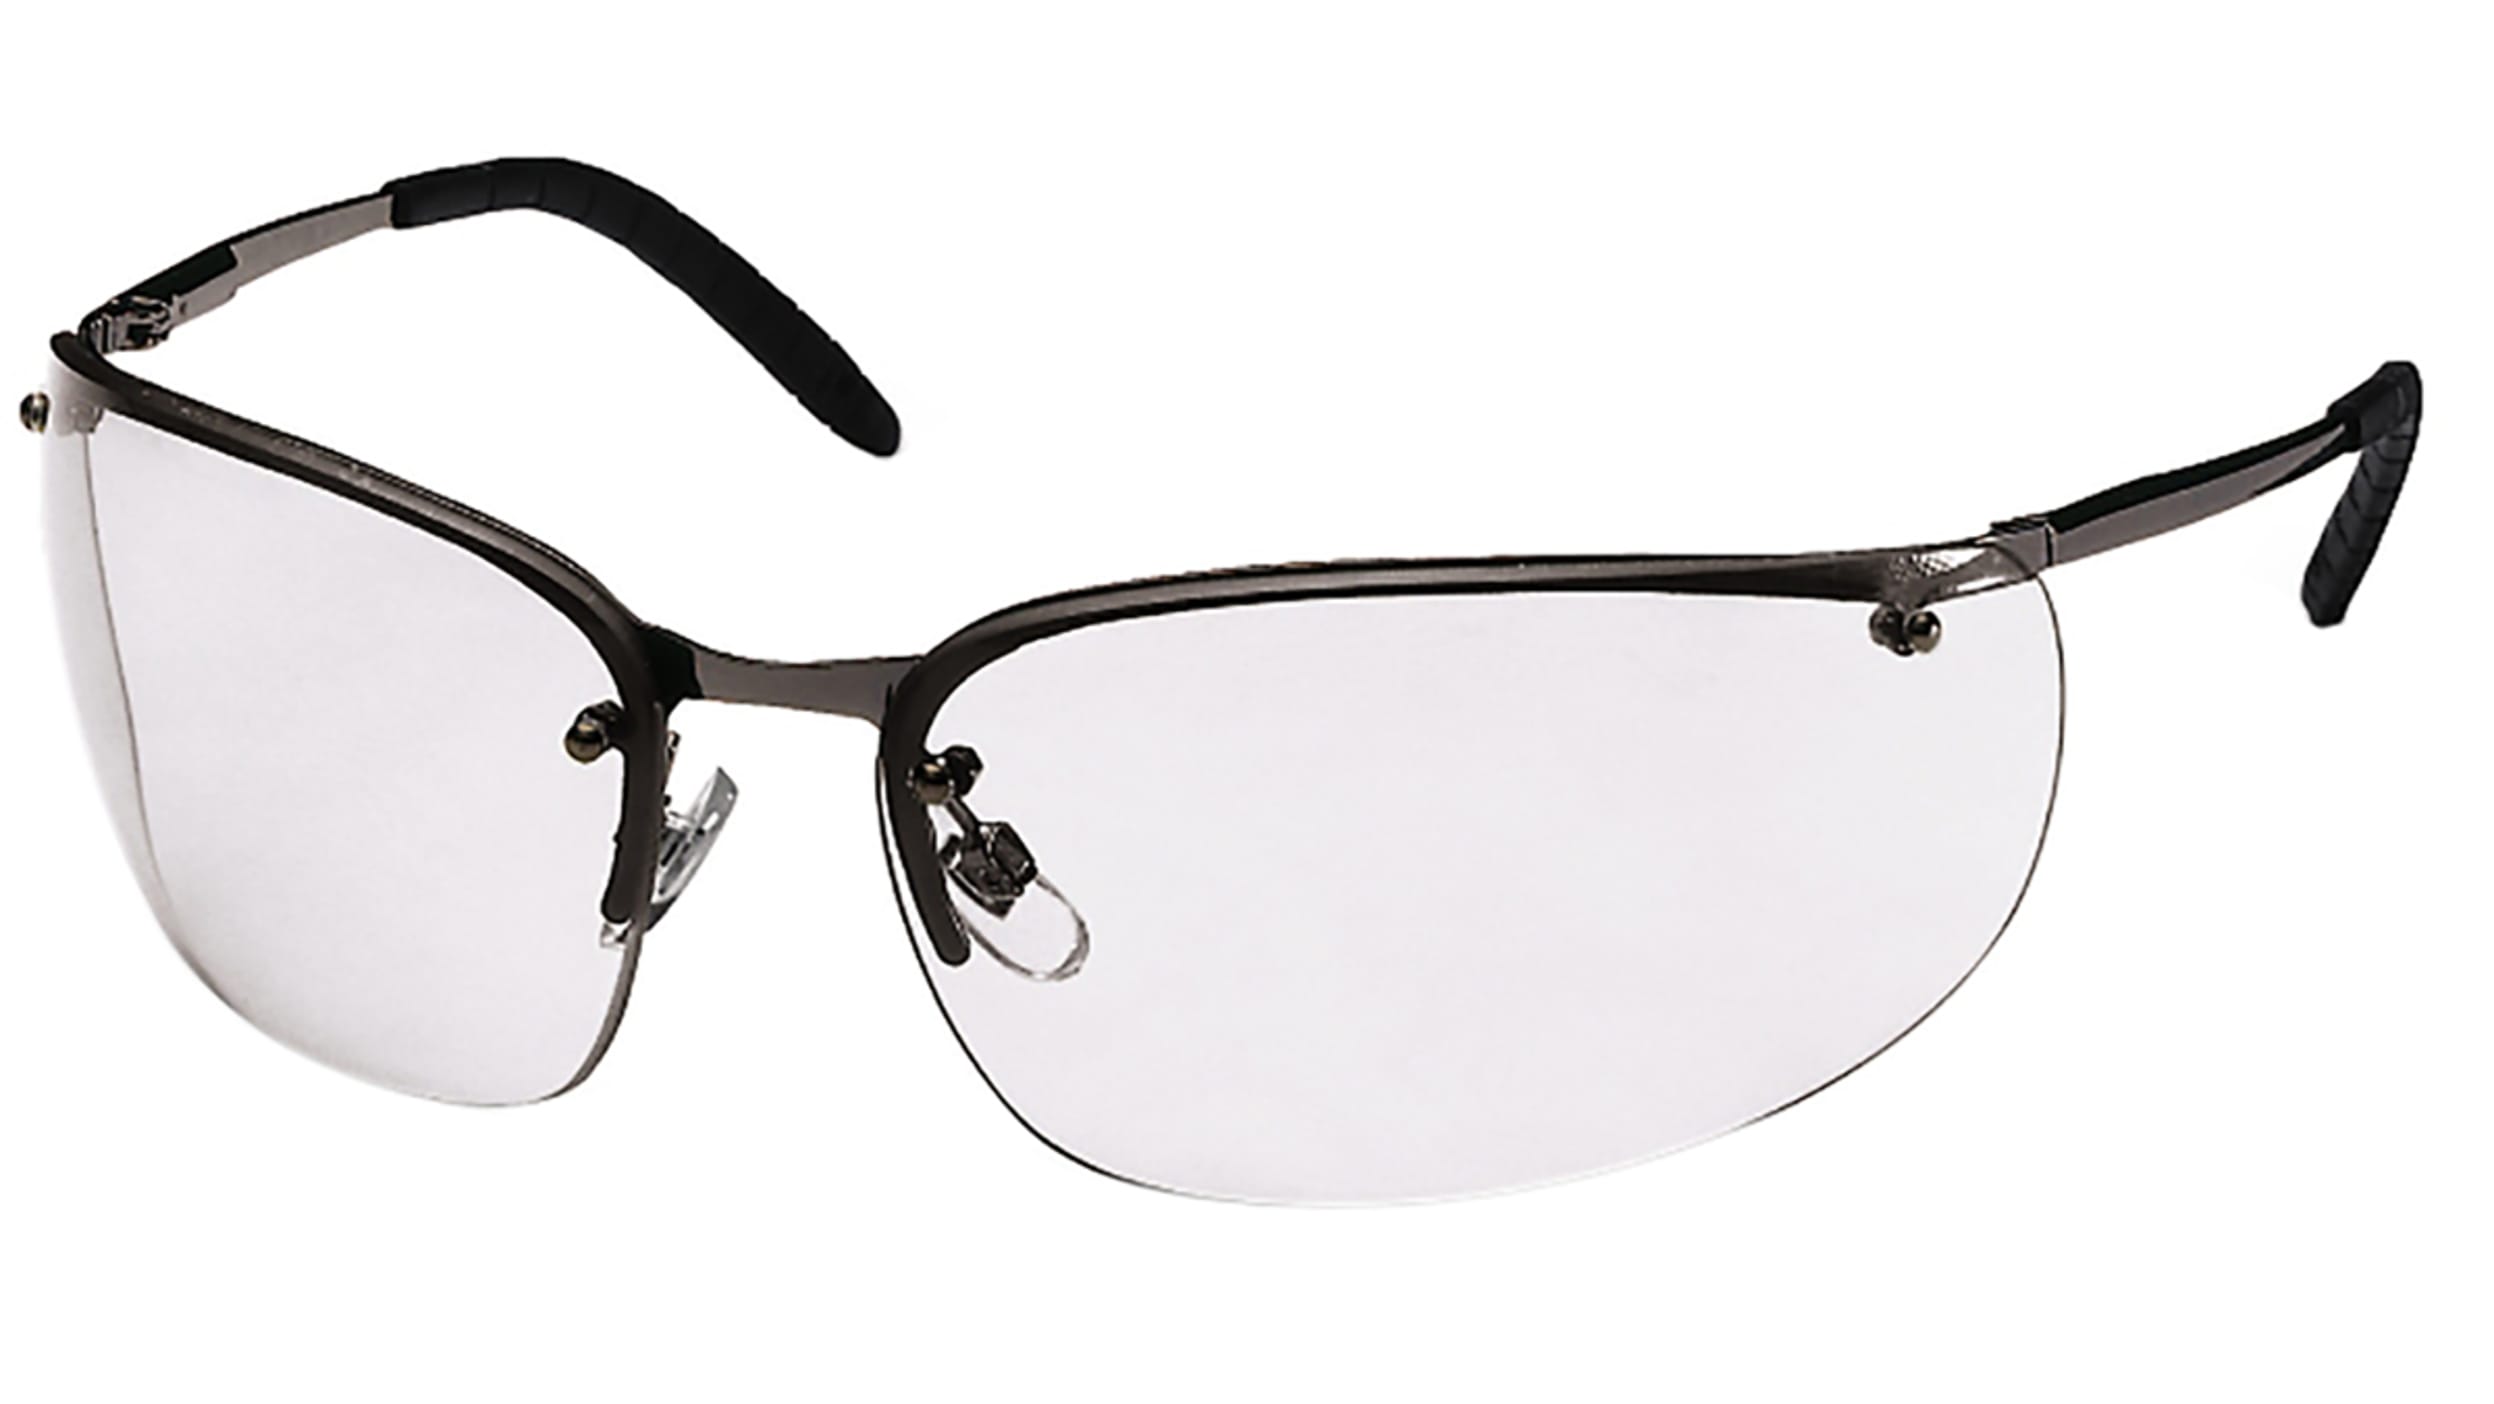 Gafas de seguridad RS PRO, lentes transparentes, protección UV